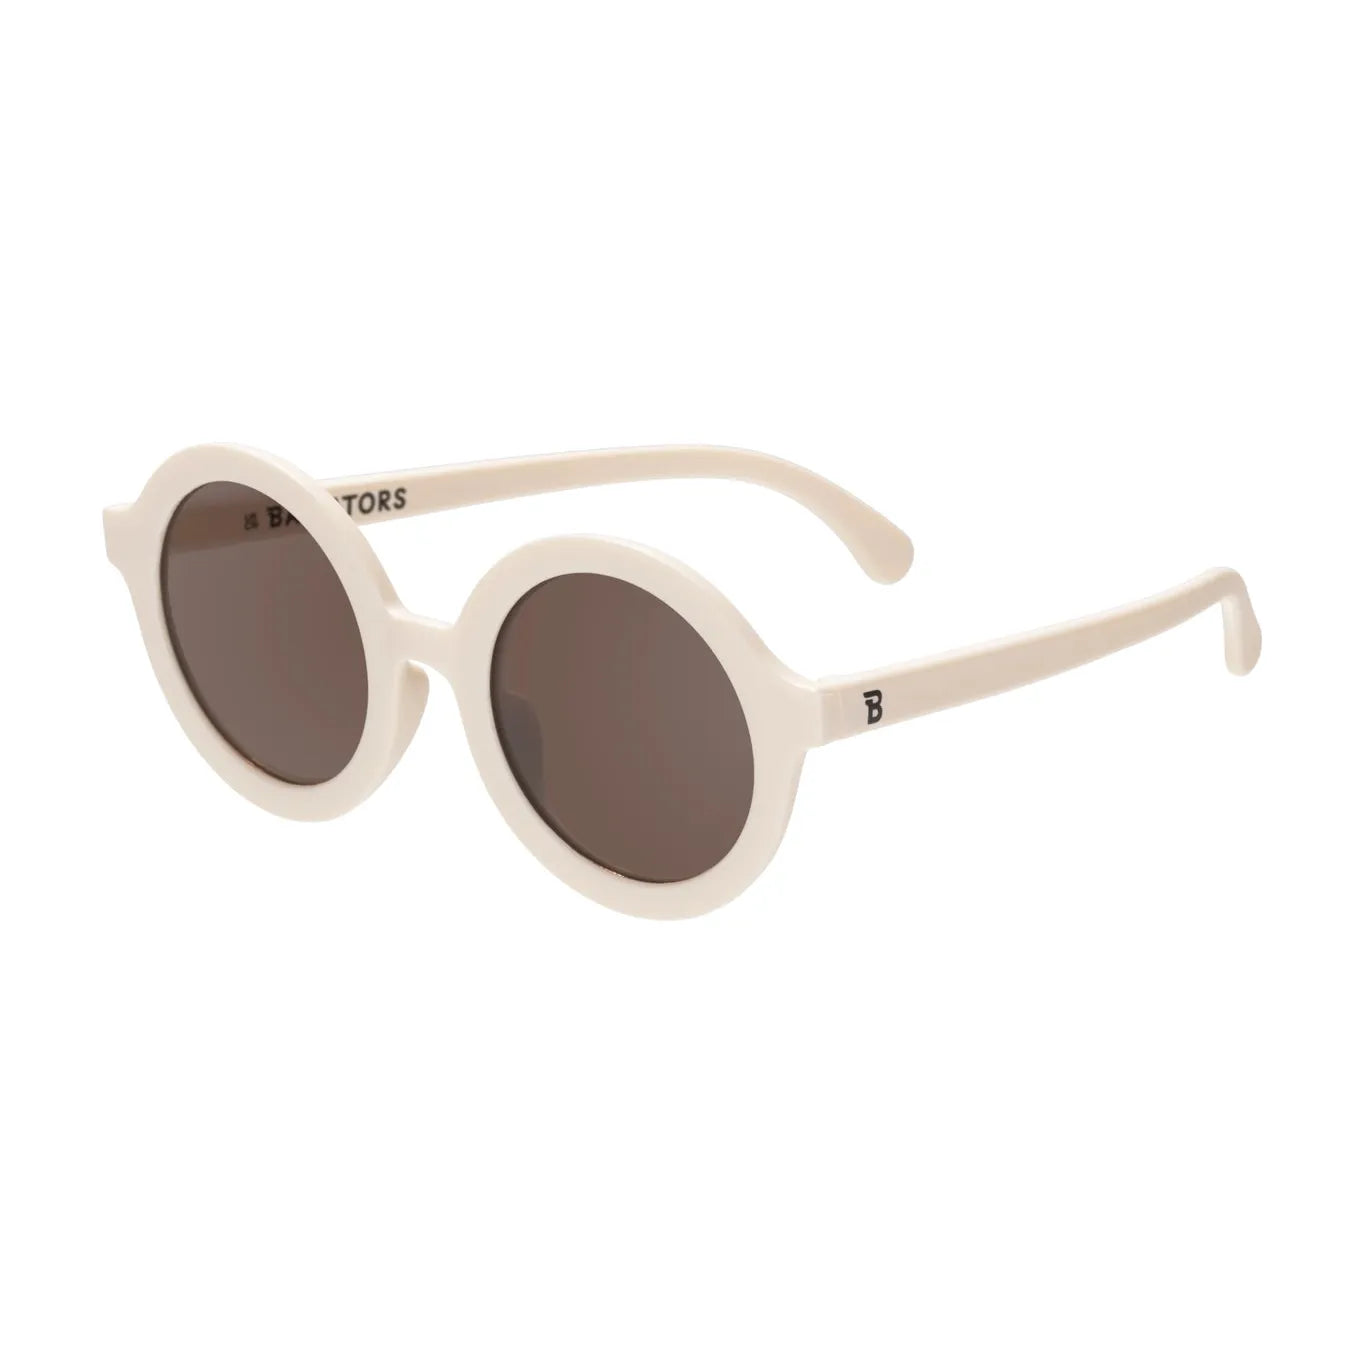 Sunglasses - Sweet Cream Euro Round